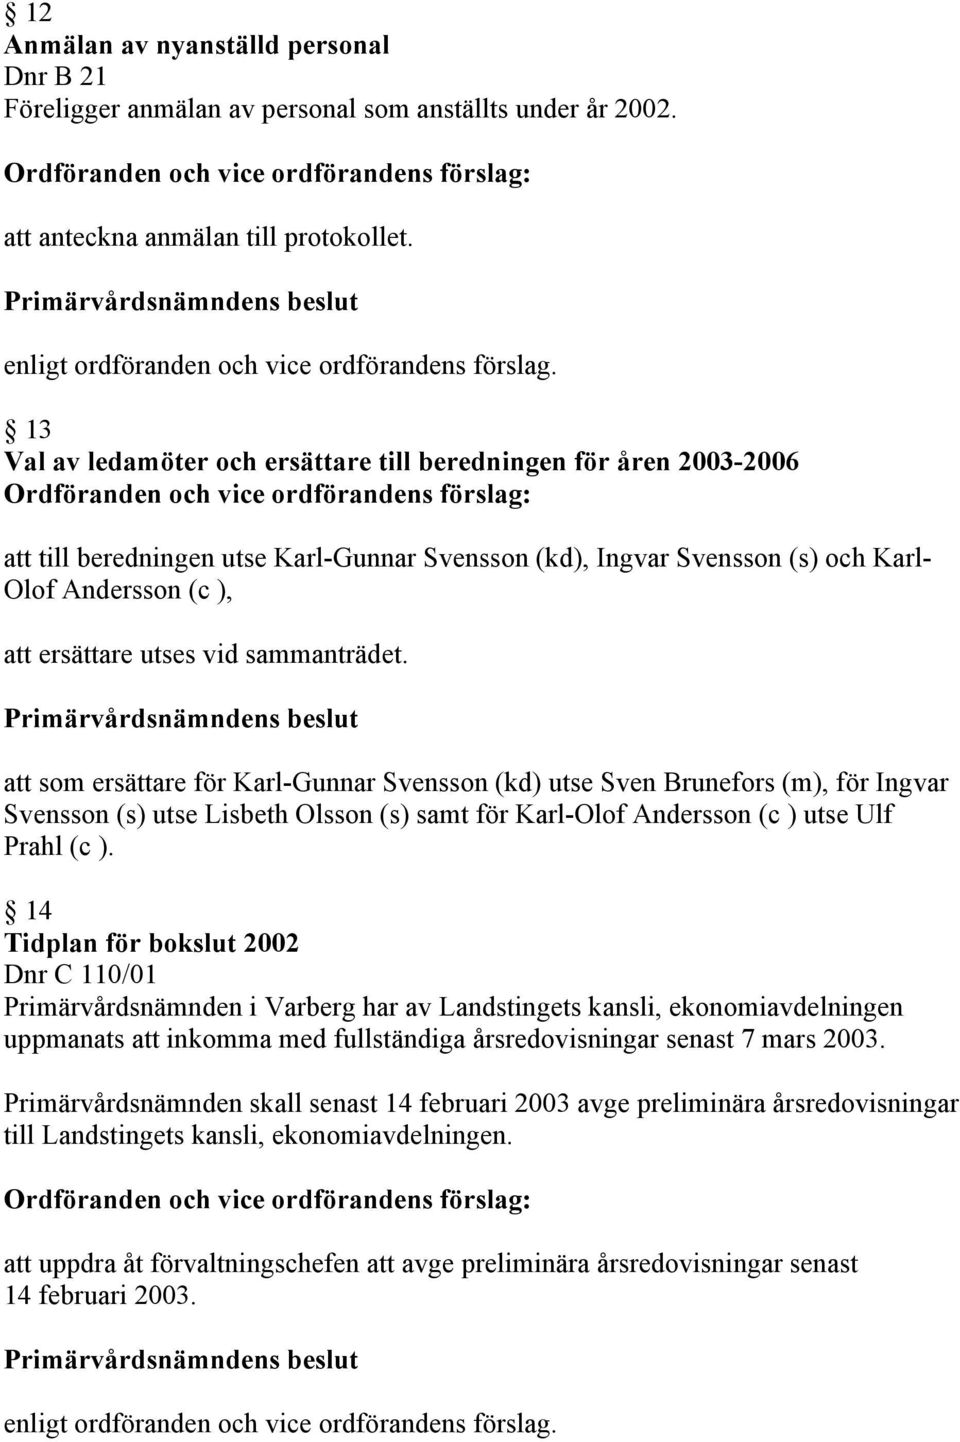 sammanträdet. att som ersättare för Karl-Gunnar Svensson (kd) utse Sven Brunefors (m), för Ingvar Svensson (s) utse Lisbeth Olsson (s) samt för Karl-Olof Andersson (c ) utse Ulf Prahl (c ).